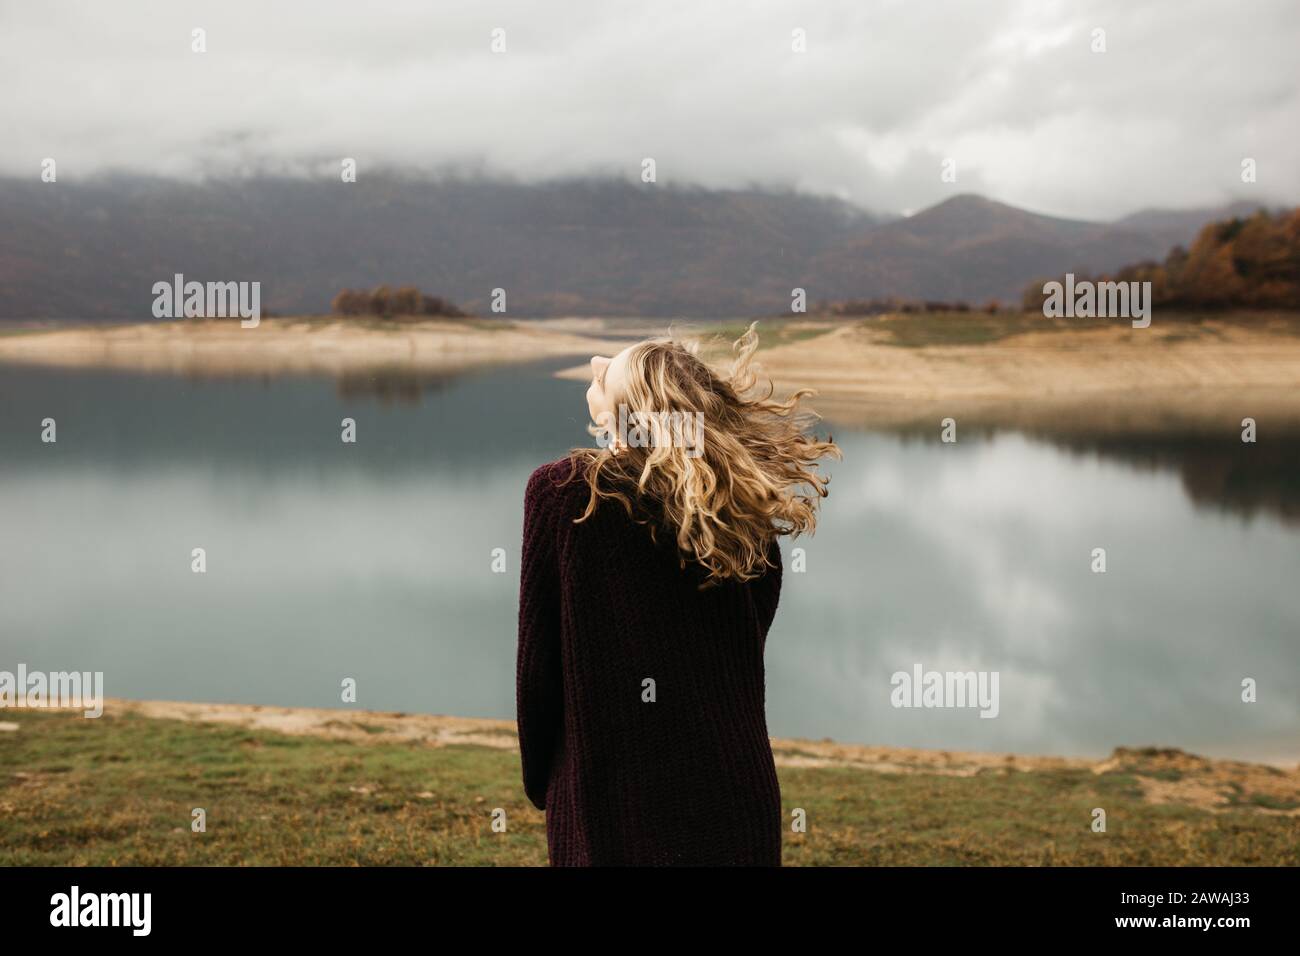 heureuse fille avec des cheveux blonds coulis sur un lac seul, ses cheveux volent à cause du vent, libre comme un oiseau. photo de fille avec le sème de cheveux coulant Banque D'Images